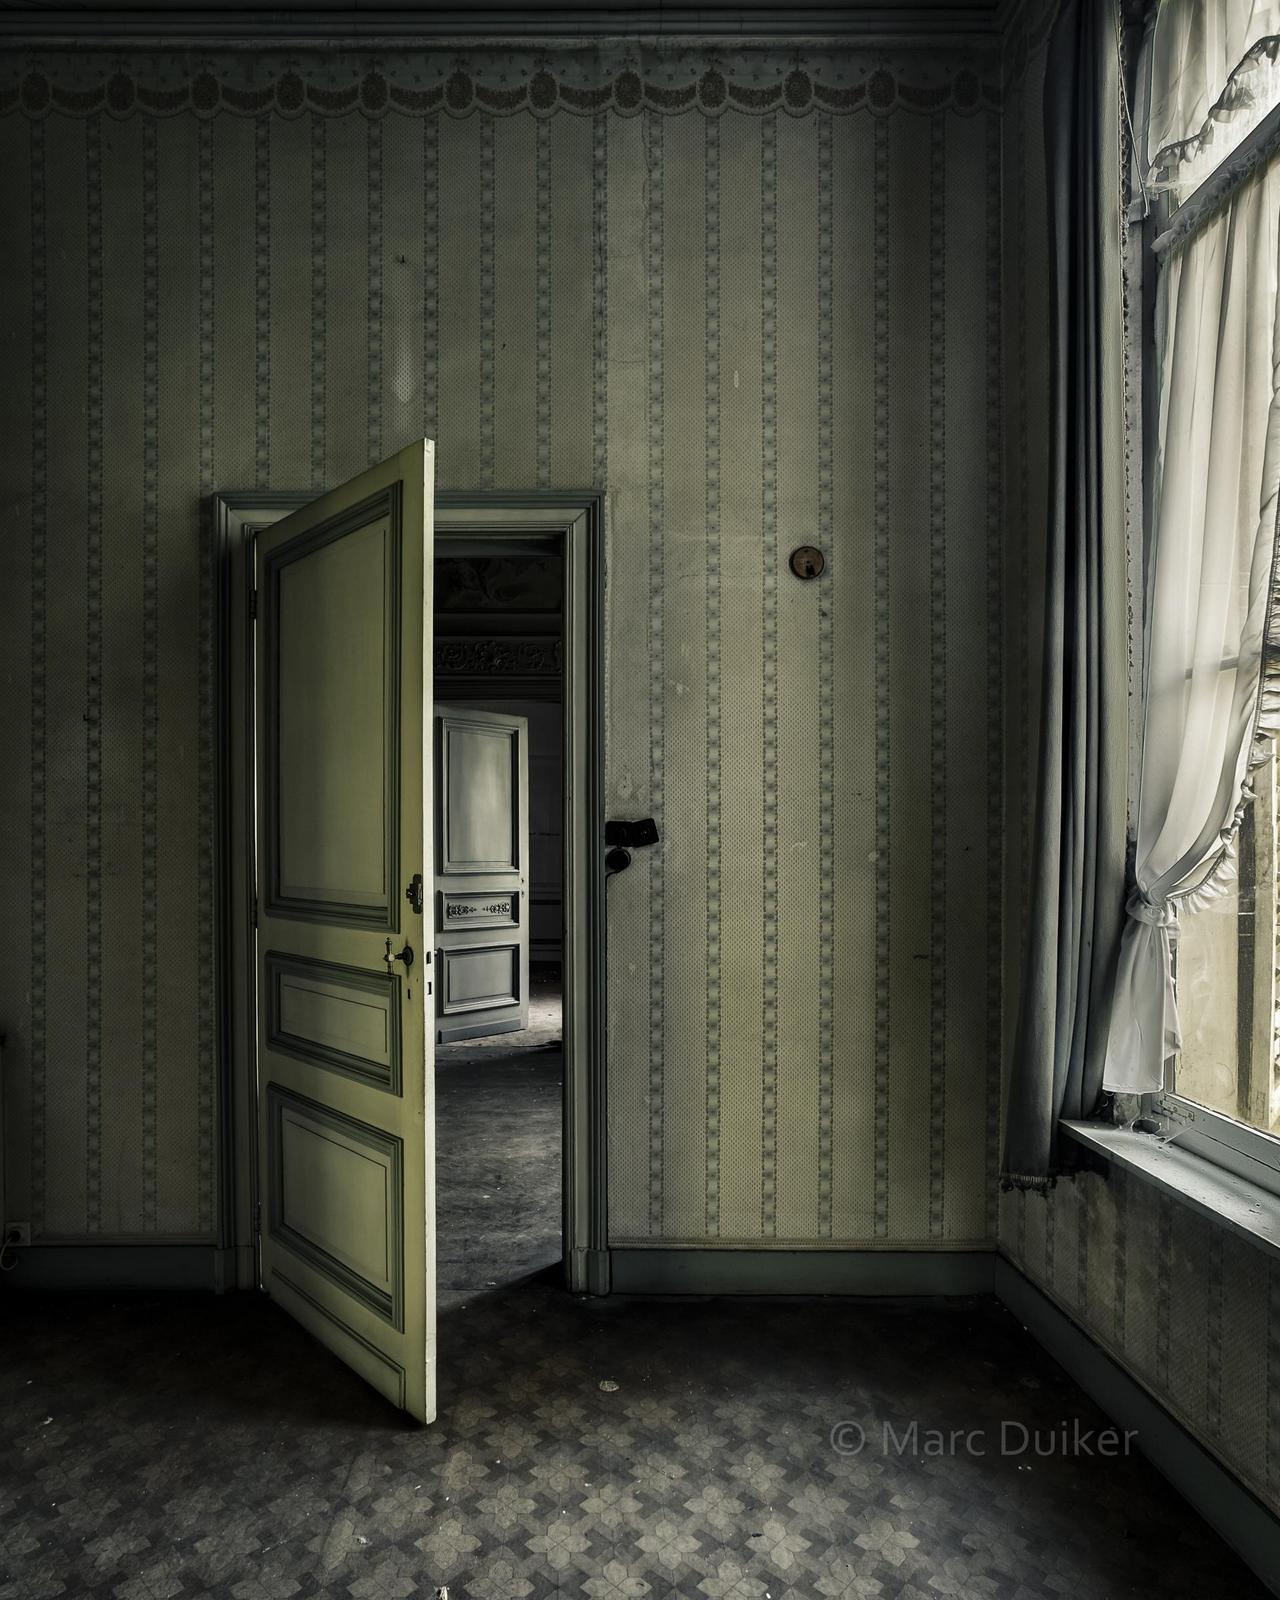 'When one door closes...' © by Marc Duiker